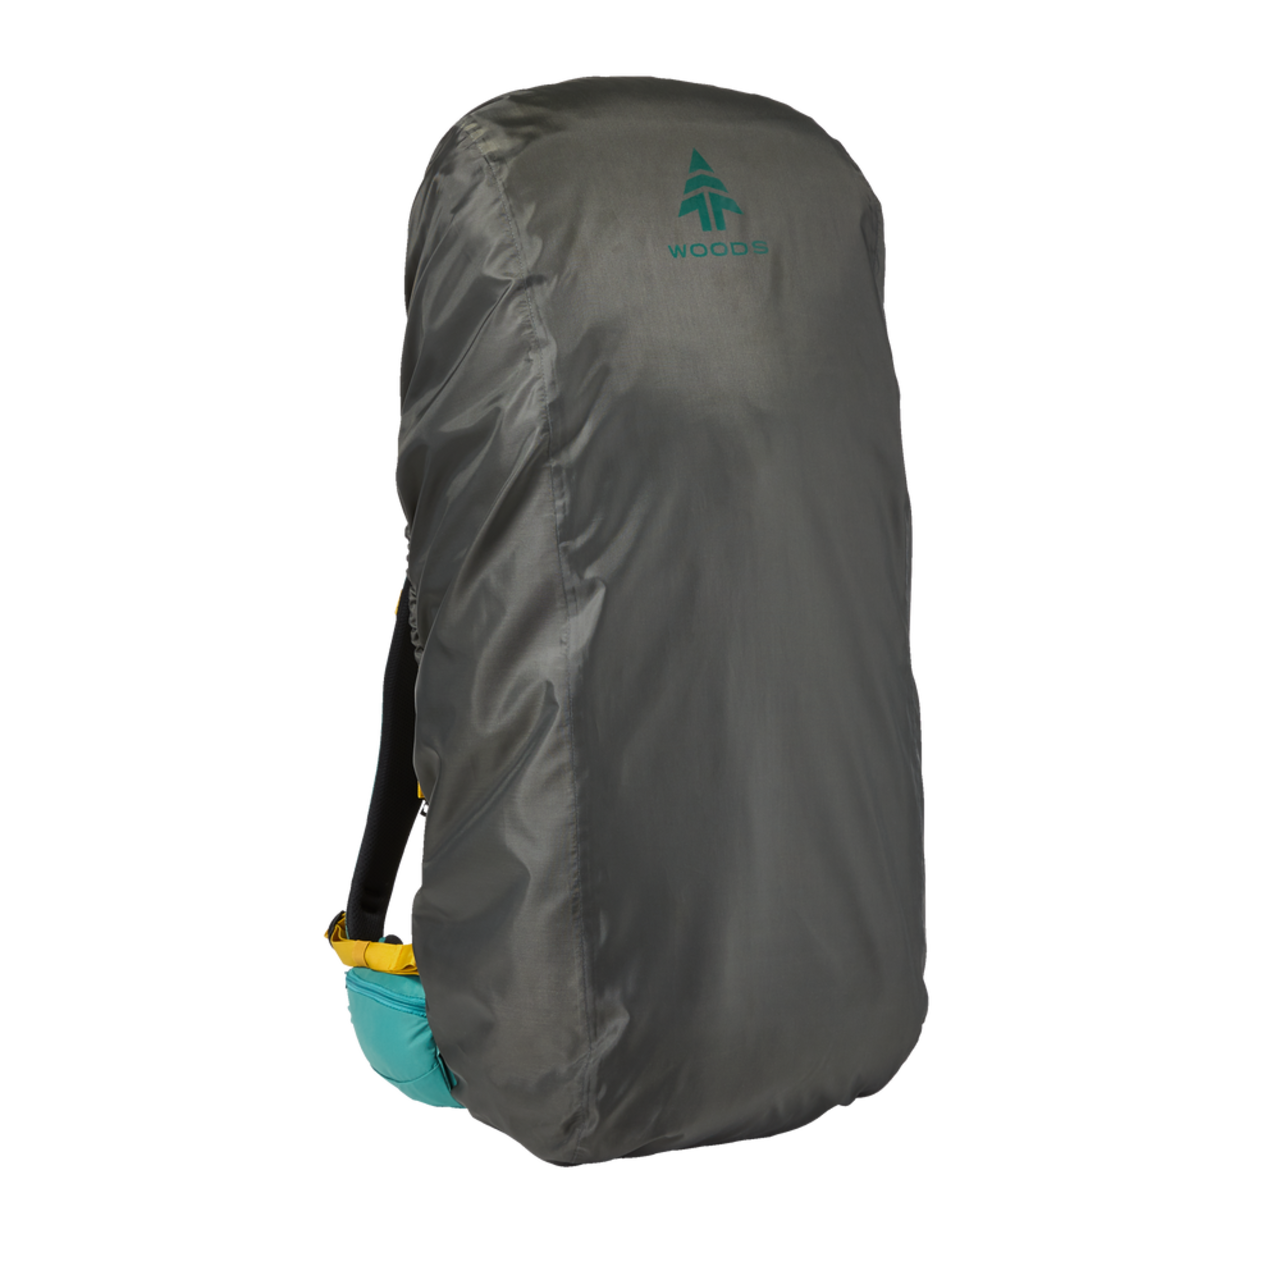 Woods, Housse de pluie imperméable pour sac à dos de taille moyenne/grande  pour le camping/la randonnée, convient jusqu'à 94,5 L